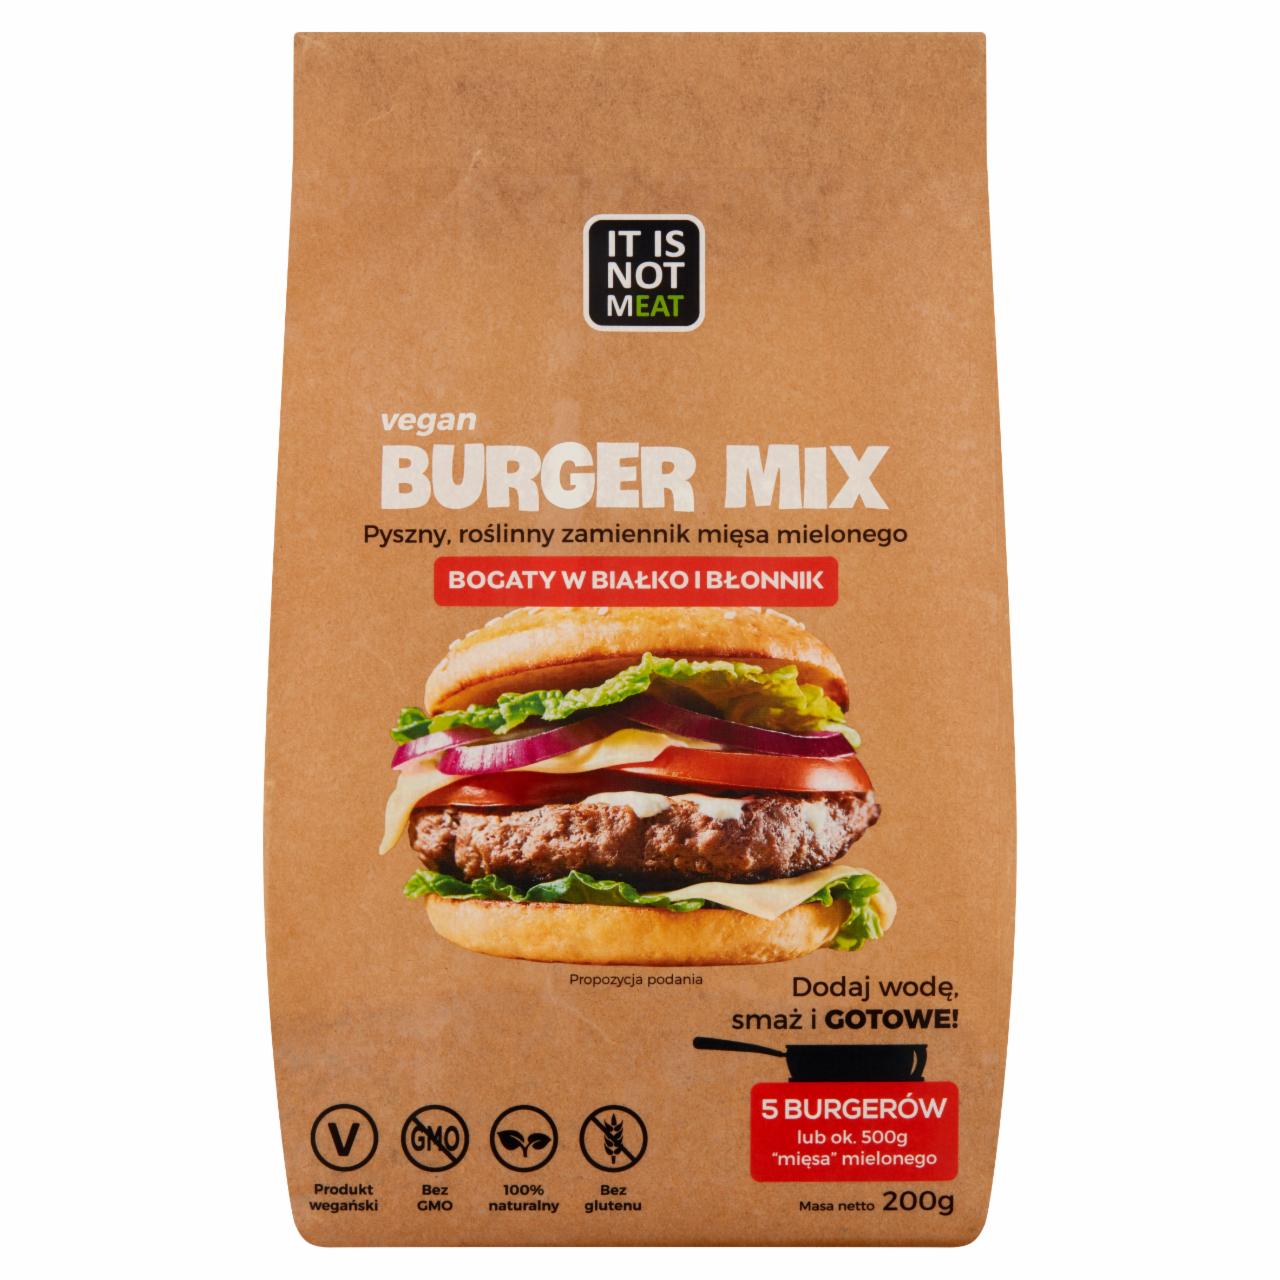 Zdjęcia - It is not mEAT Burger Mix Roślinny zamiennik mięsa mielonego 200 g